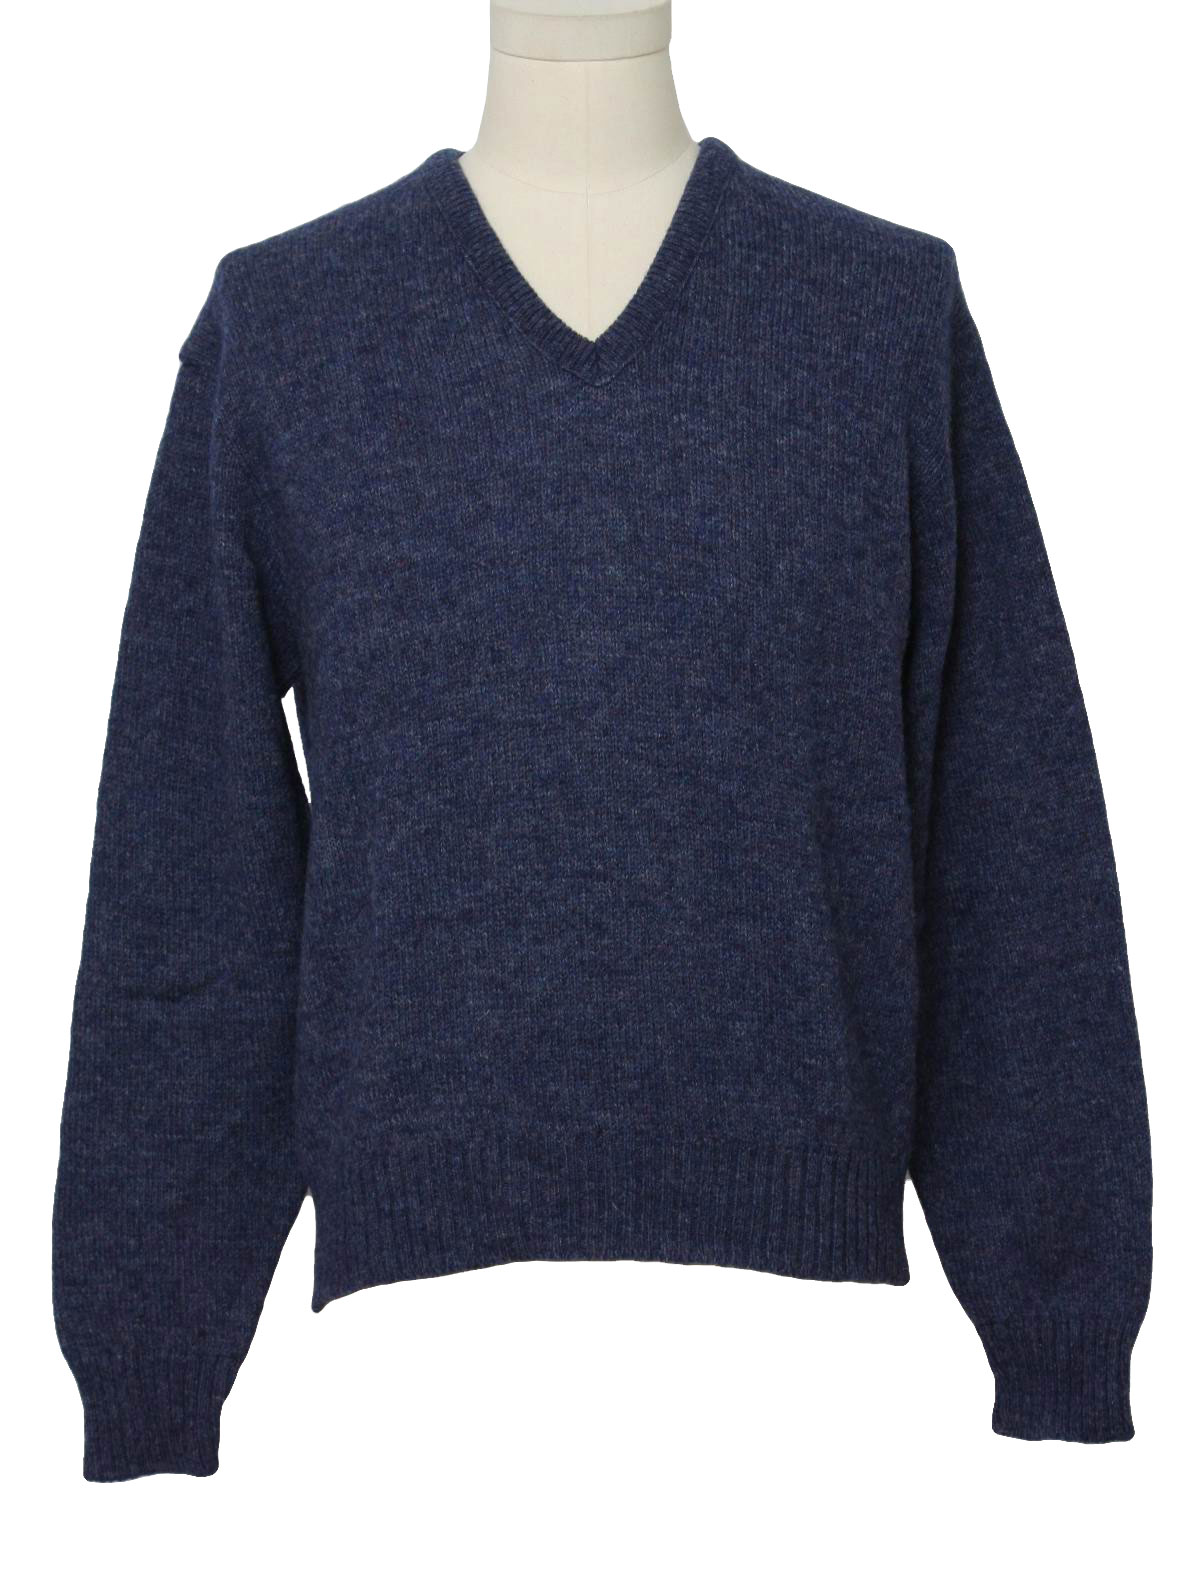 Retro 1980's Sweater (Jantzen) : 80s -Jantzen- Mens heathered blue ...